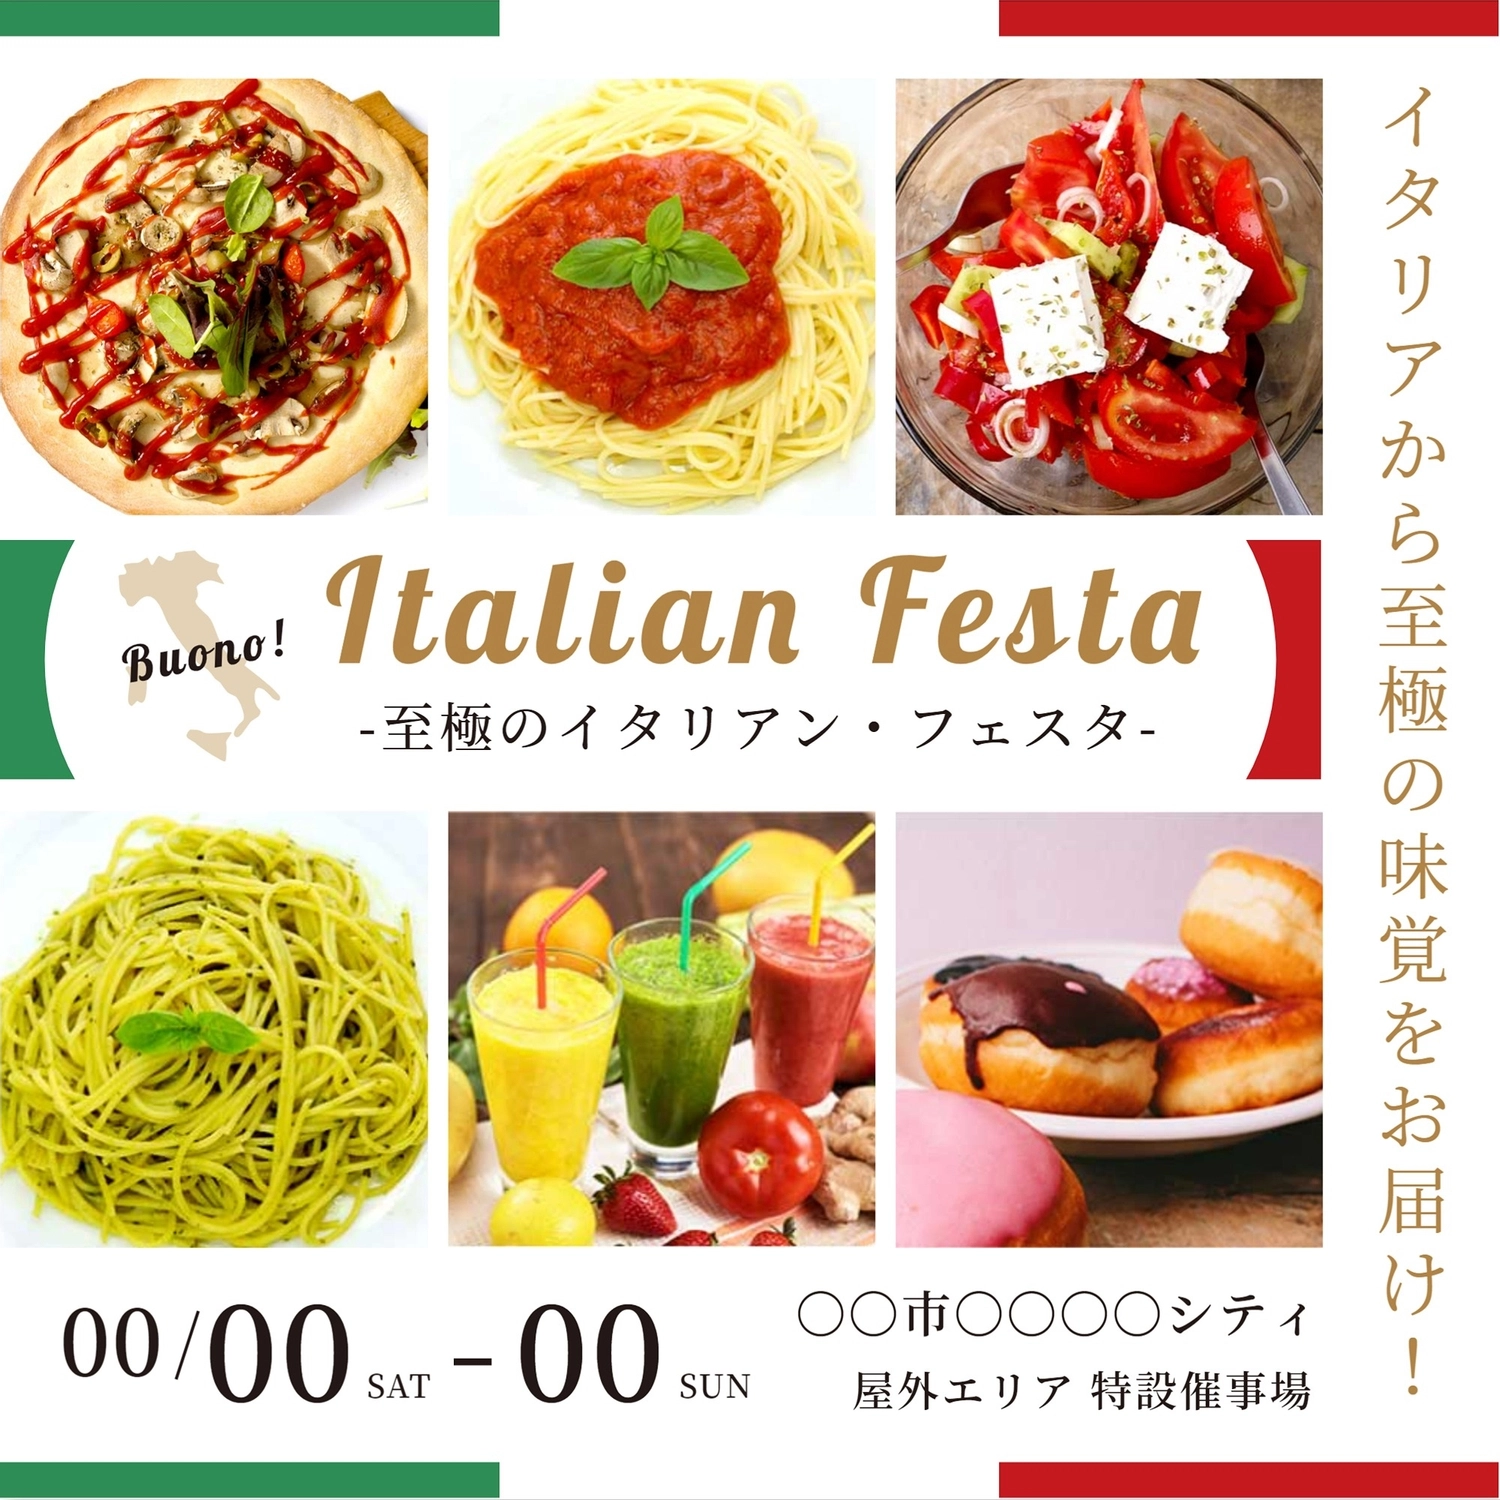 イタリアフェスのテンプレート, Tomato salad, diet, limited time, Instagram Post template